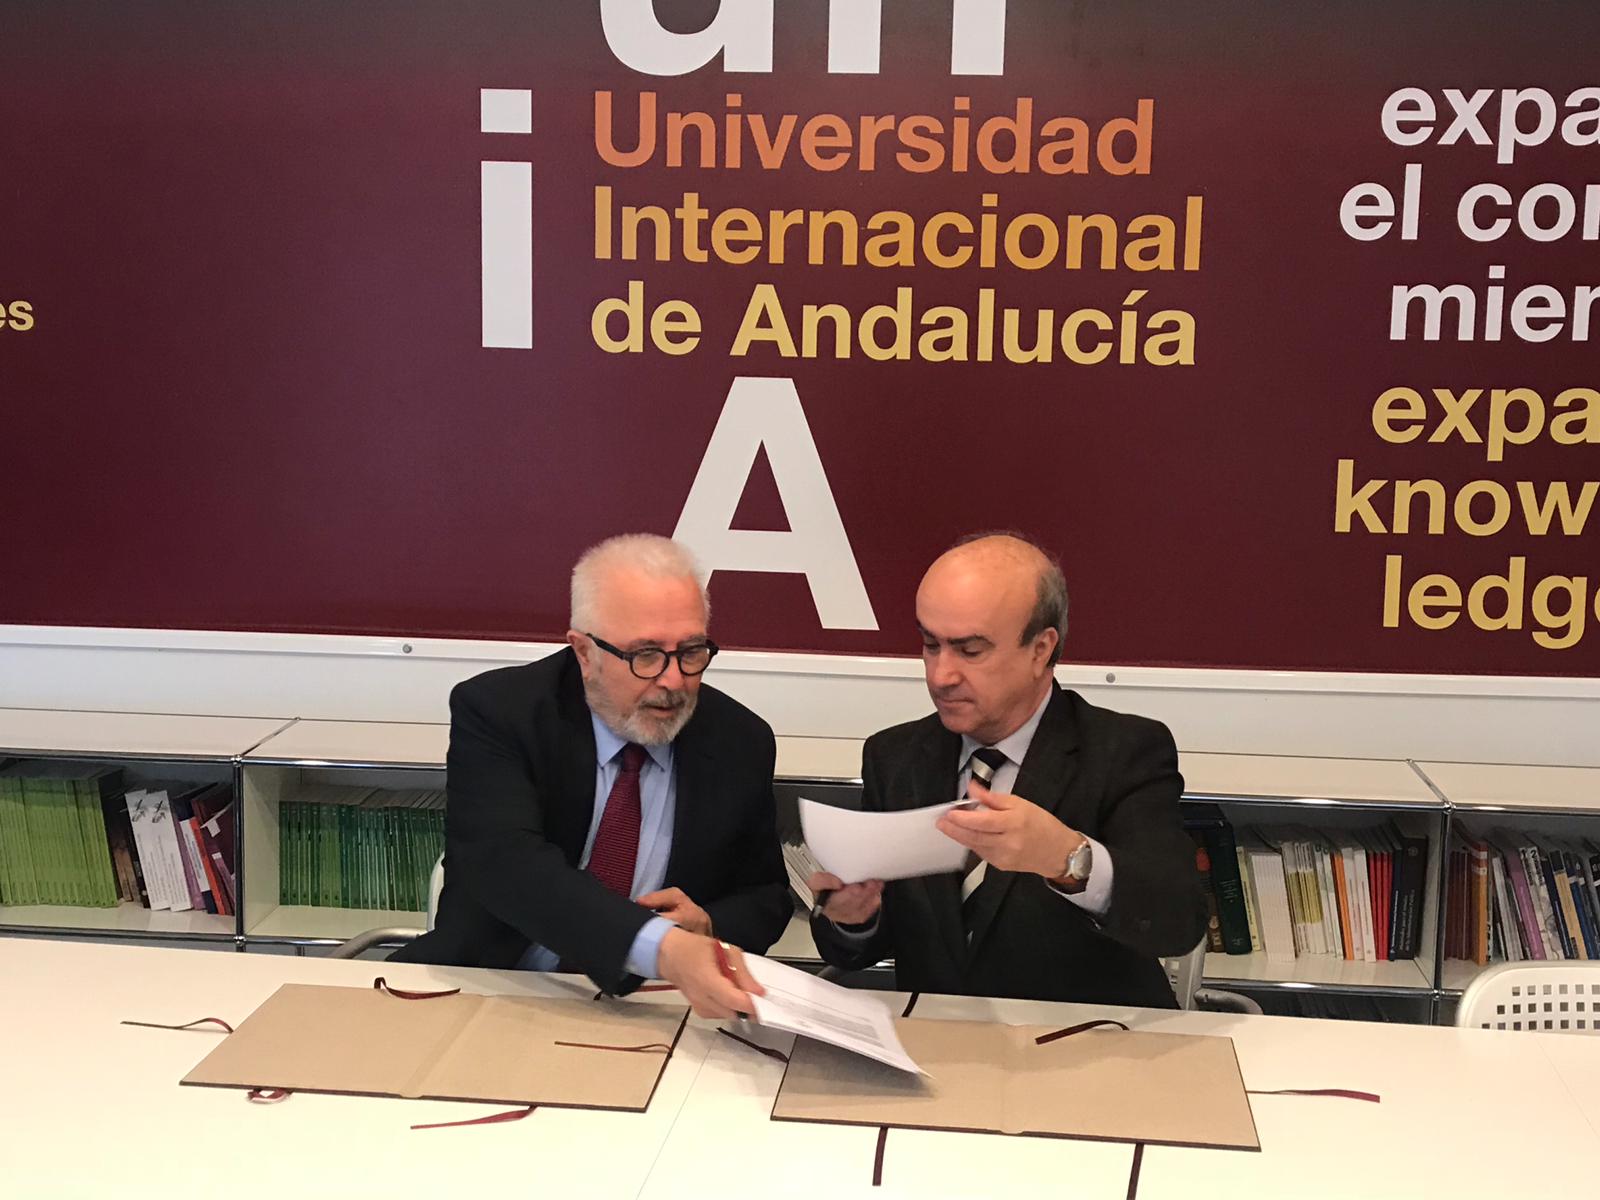 La UNIA y la OEI firman un protocolo de actuación para promover la educación en derechos humanos, ciudadanía y valores democráticos